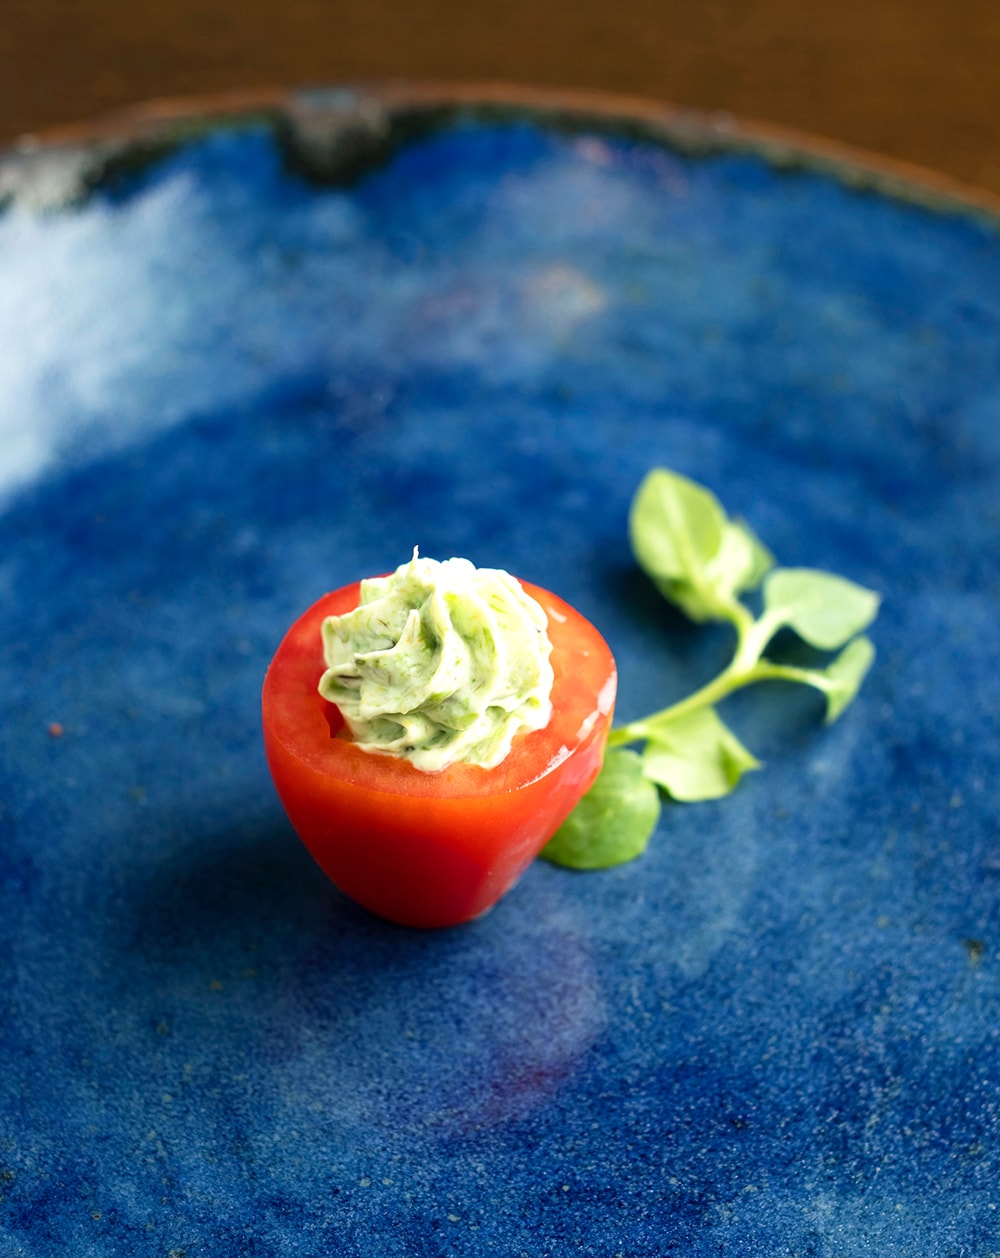 フキノトウを詰めた真っ赤なミニトマトをあえて鮮やかなブルーのお皿に。器は竹田市内の「無風窯」高木逸夫さんの作品。